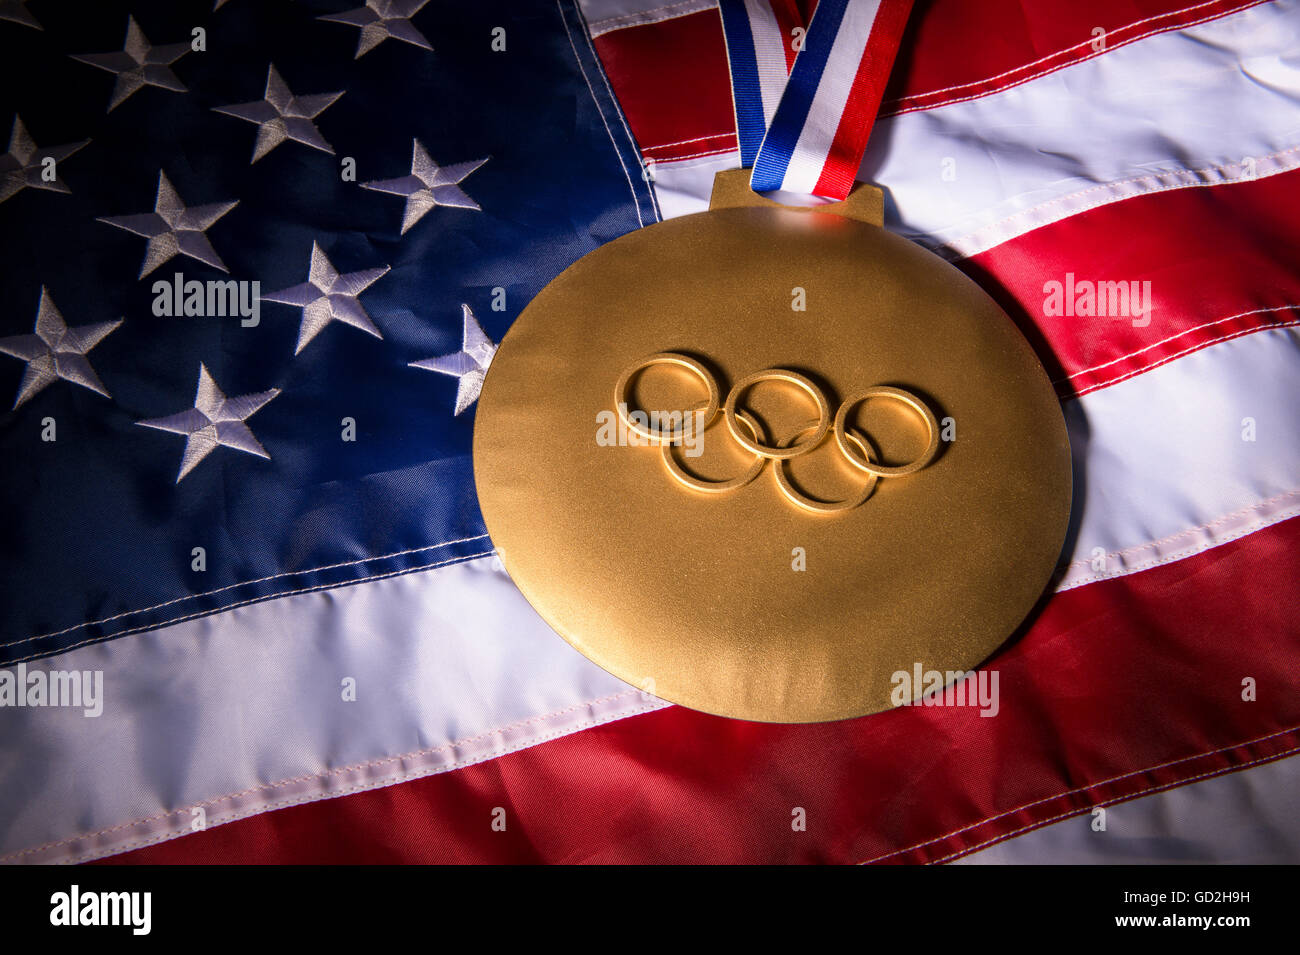 RIO DE JANEIRO - 3. Februar 2016: Große Goldmedaille mit Olympischen Ringen sitzt auf amerikanische Flagge Hintergrund. Stockfoto